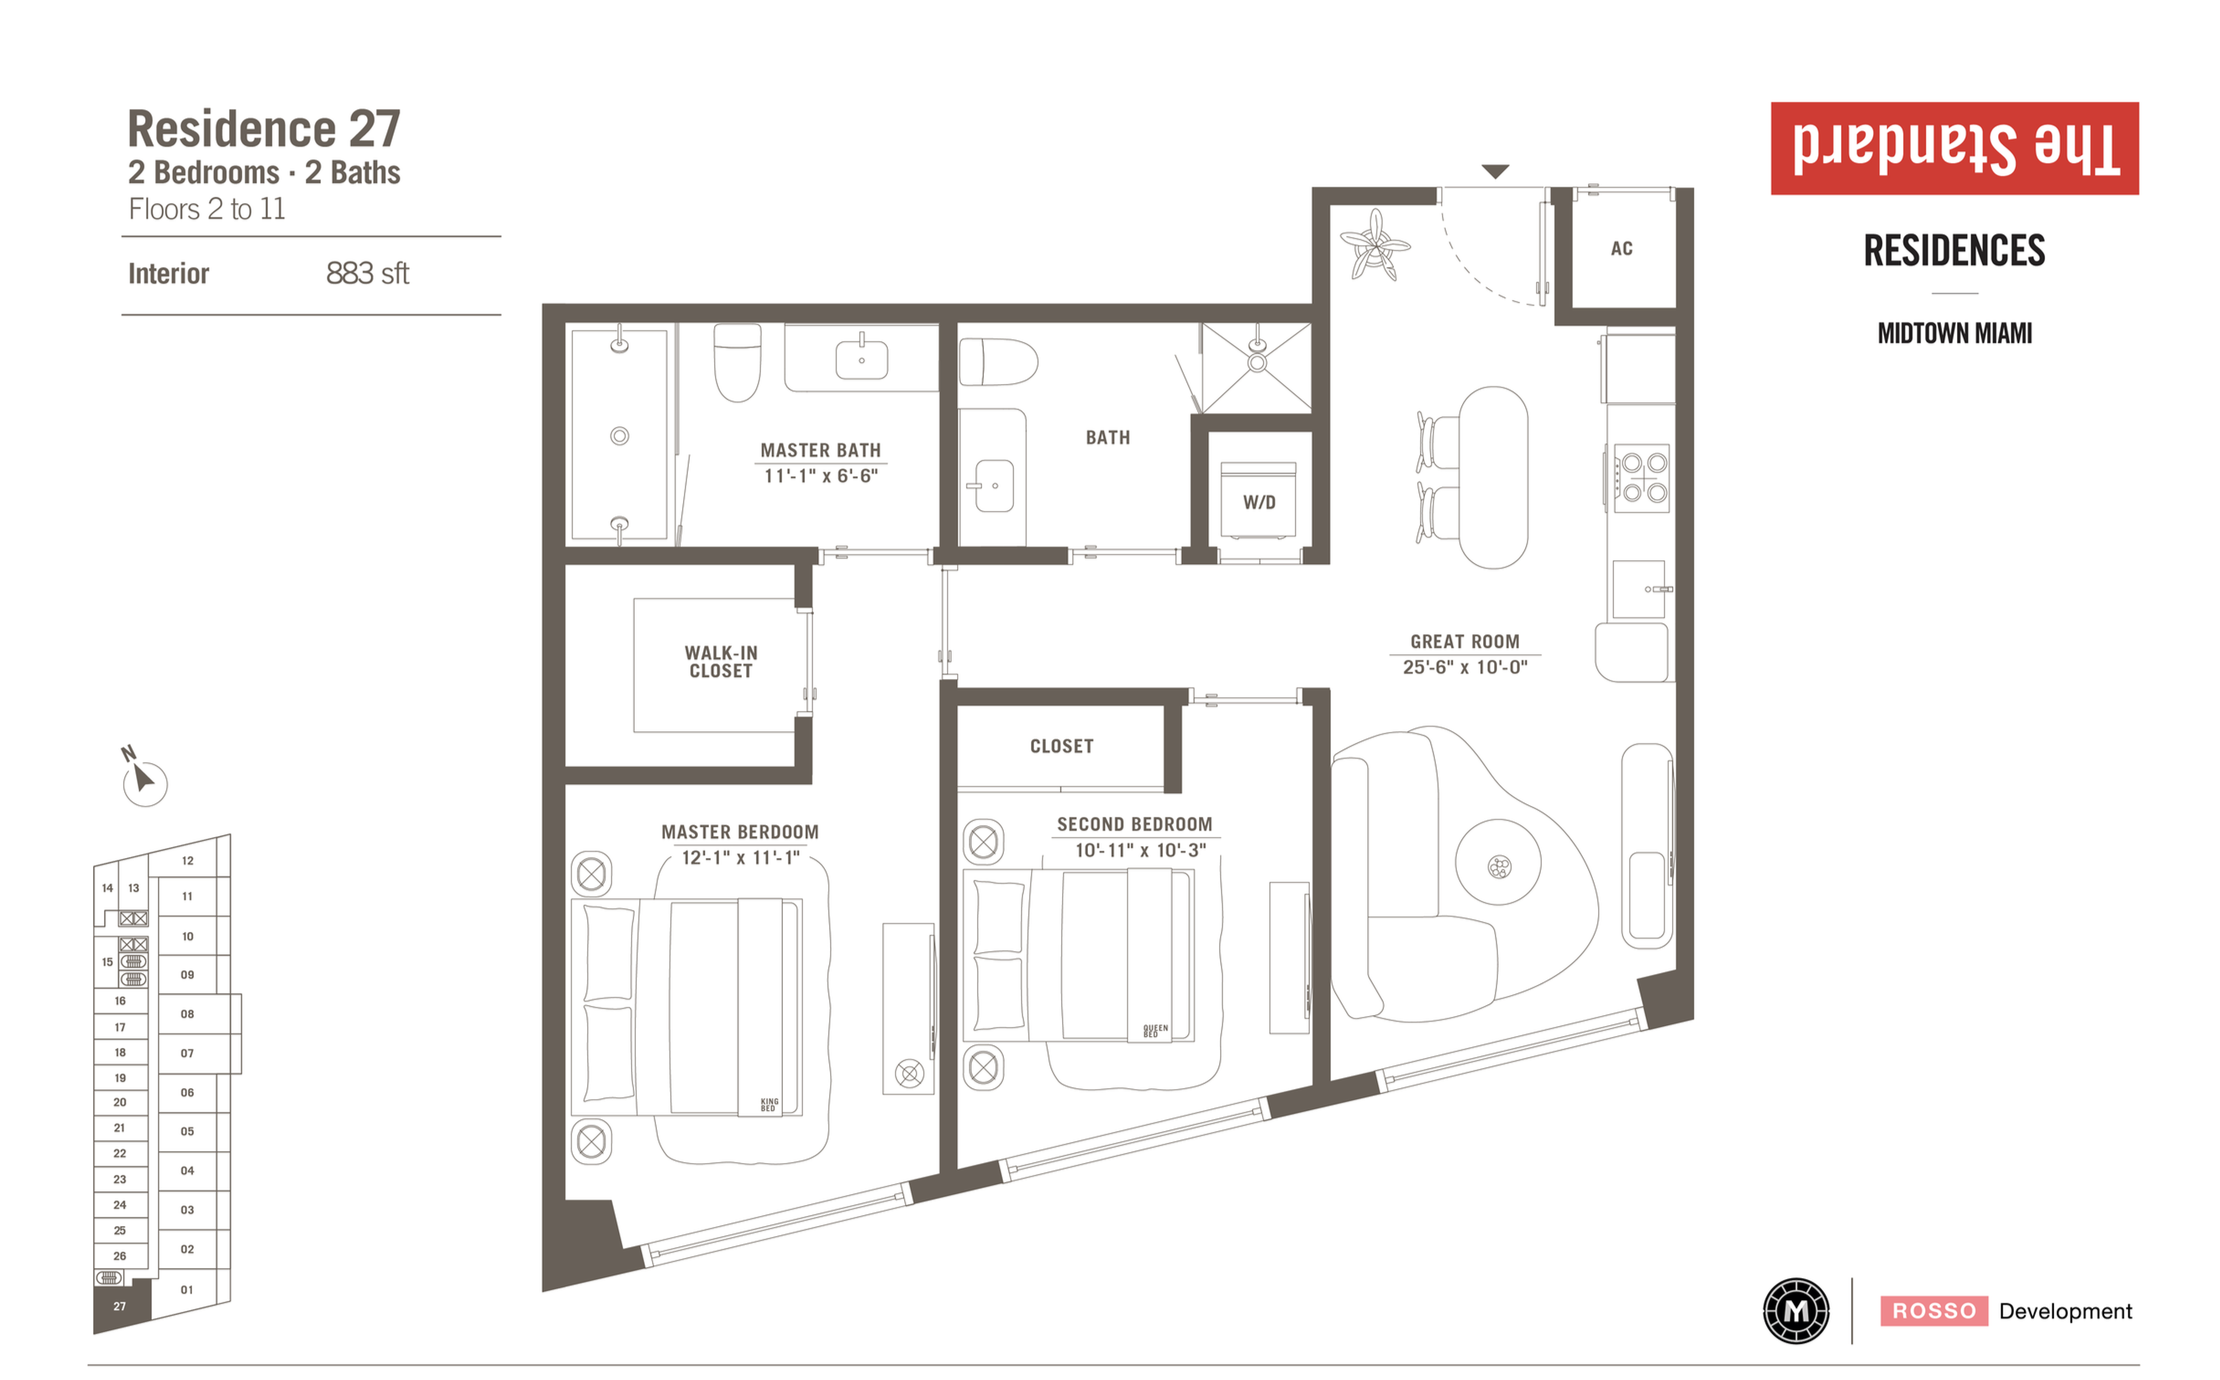 The Standard Residences | Residence 27 |  2 Be/2 Ba | 883 SF | Floor 2-11